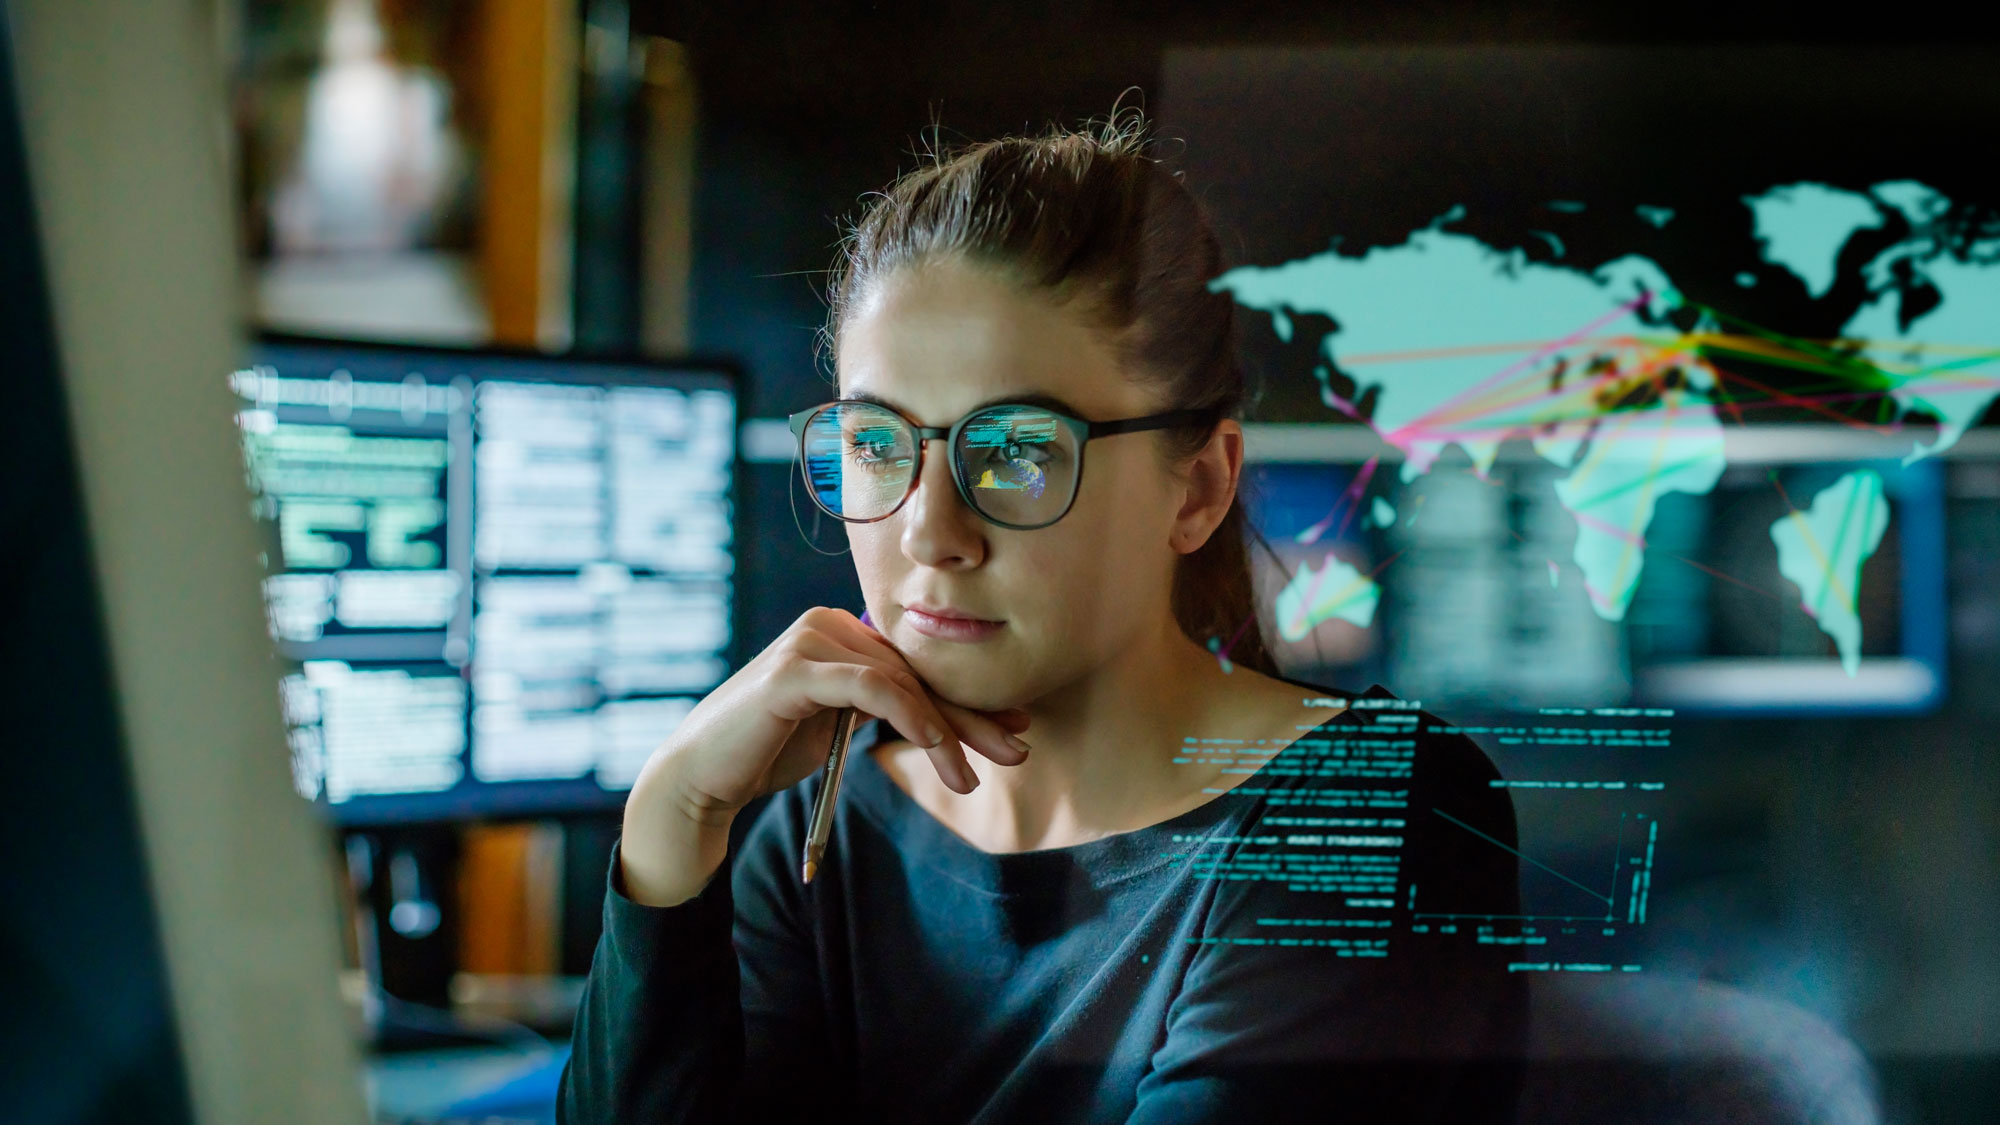 ung kvinne med briller med flere skjermer med koder og kart rundt seg